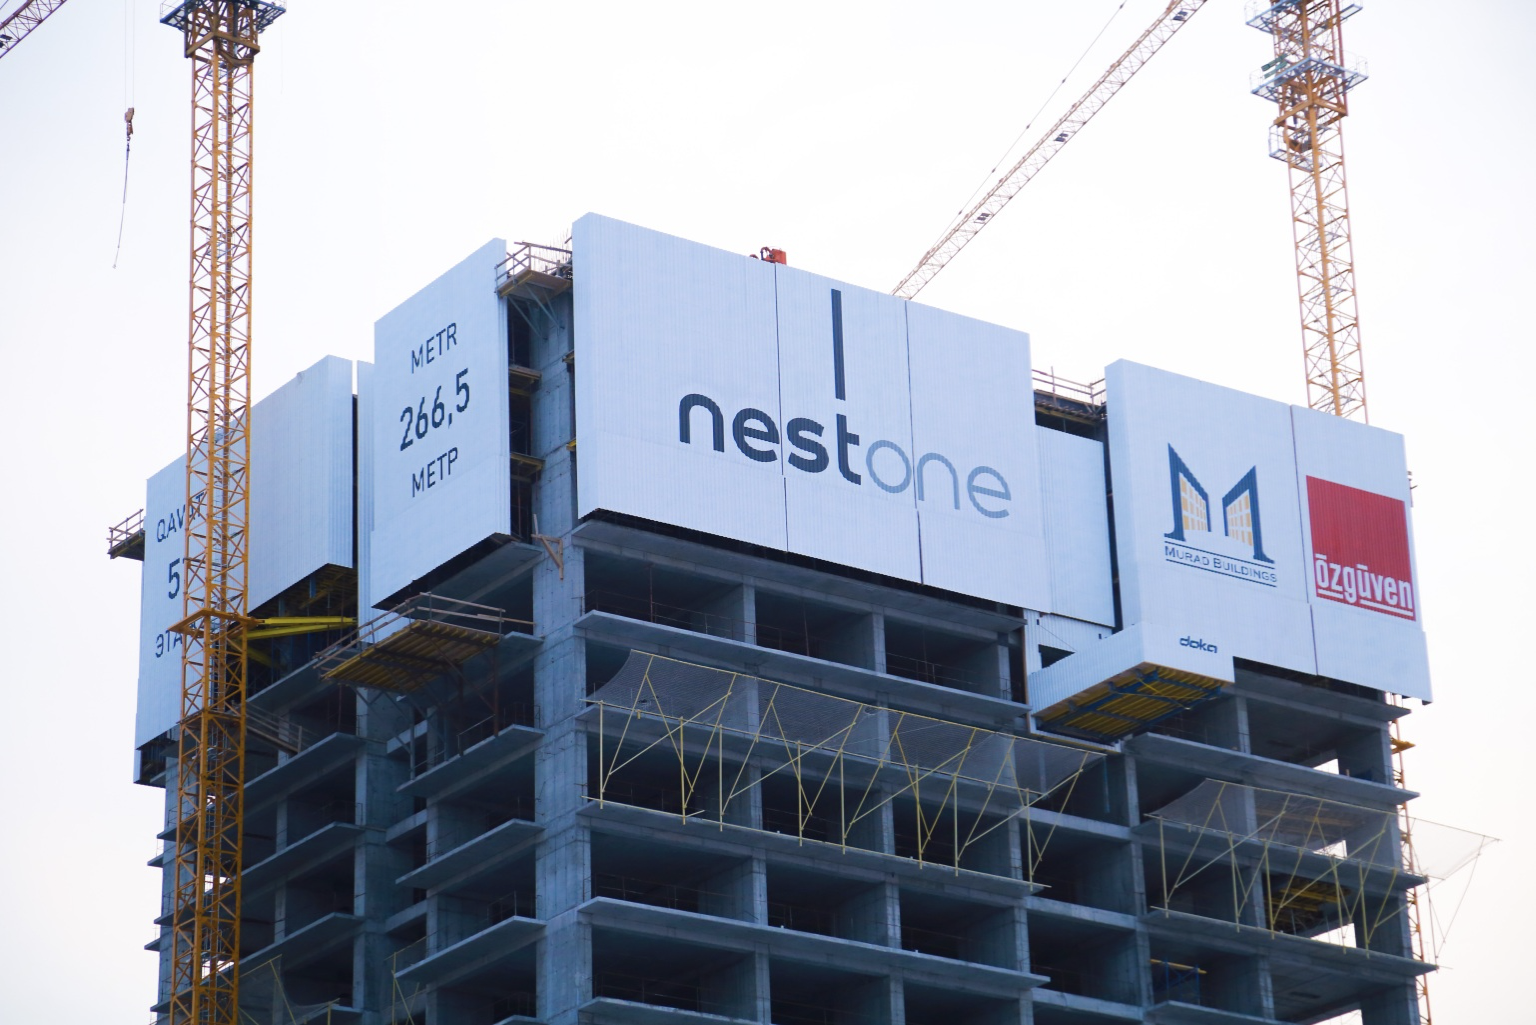 В Nest One рассказали о системе для защиты от ветра, используемой при строительстве